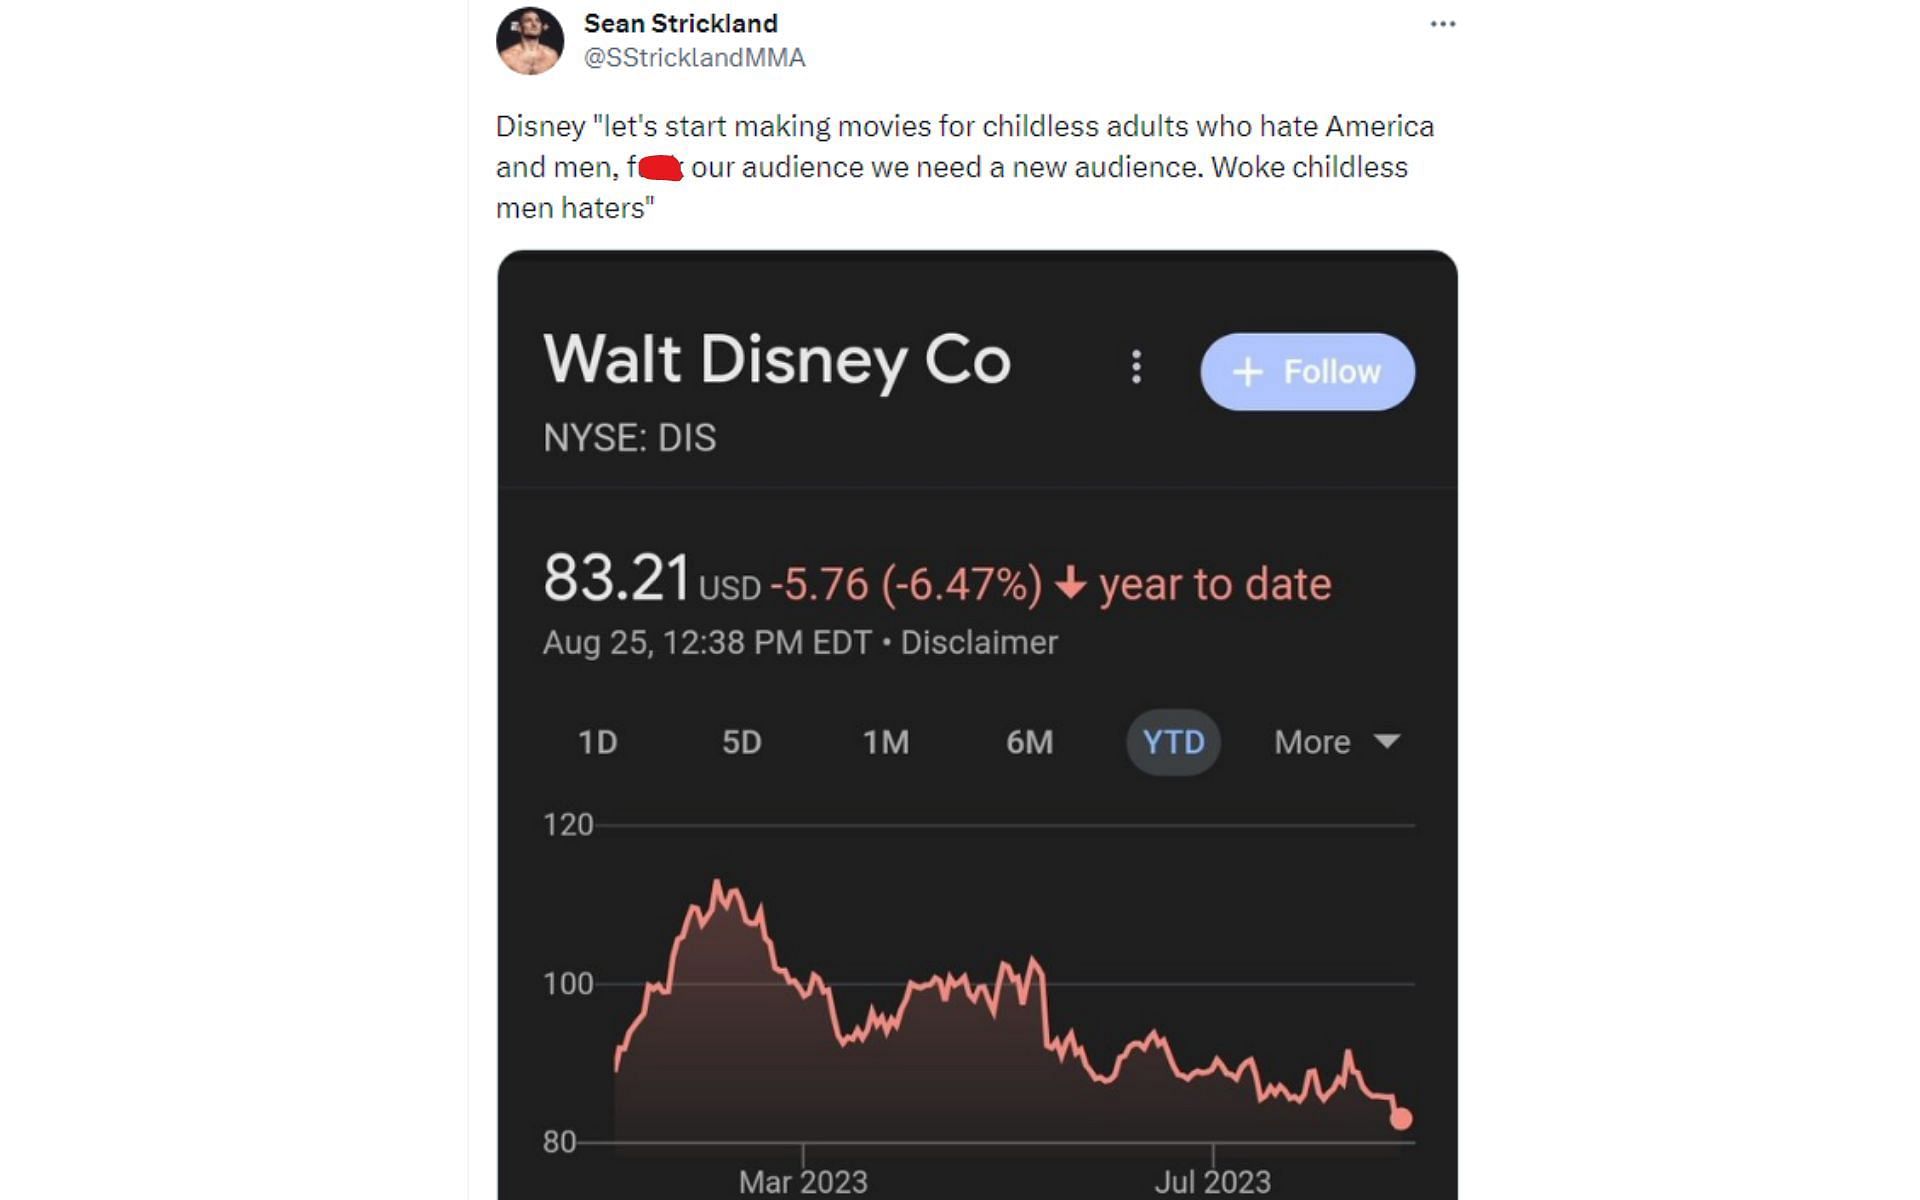 Tweet directed to Disney